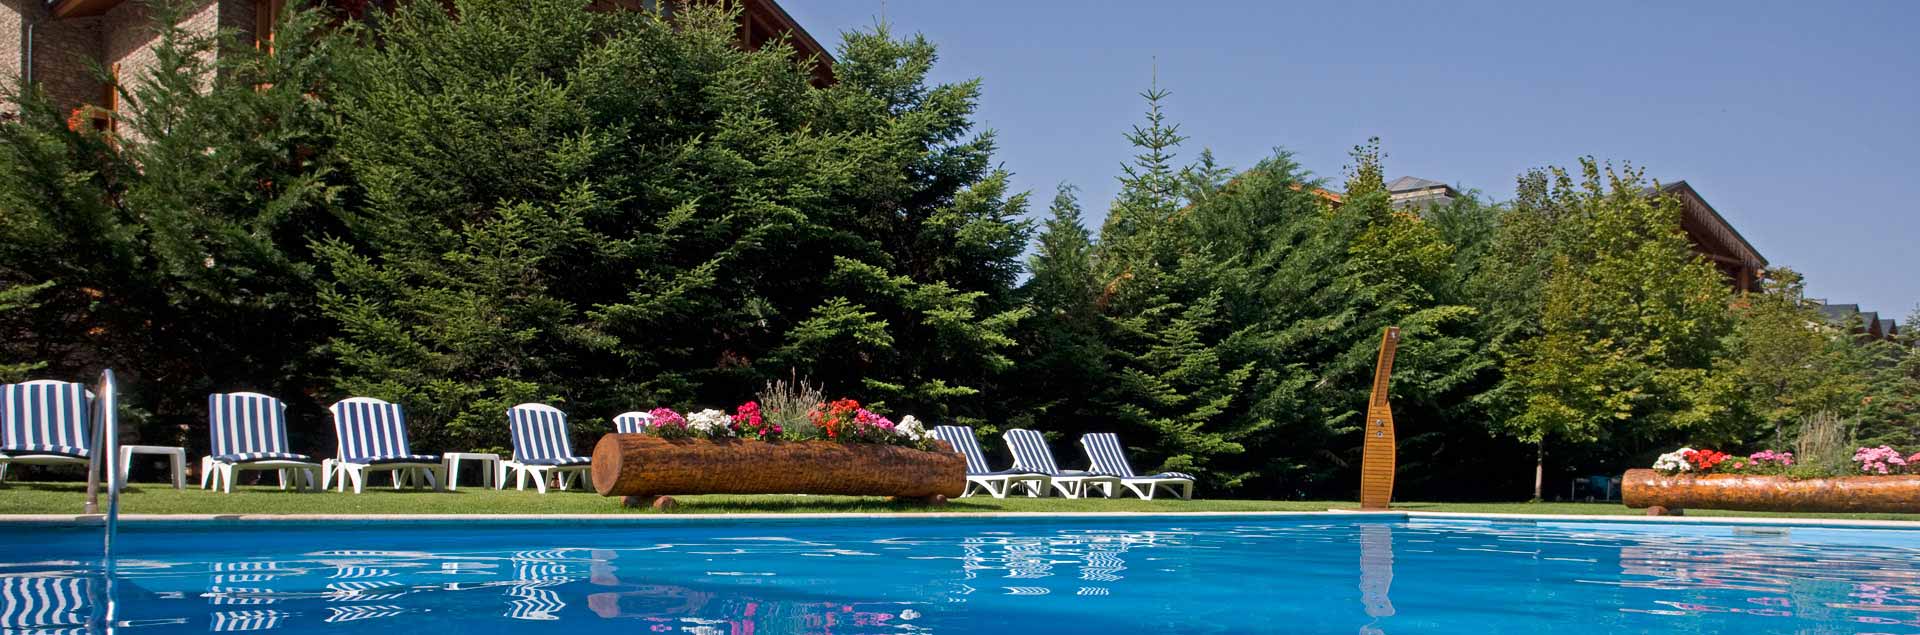 hotel en soldeu con piscina en verano